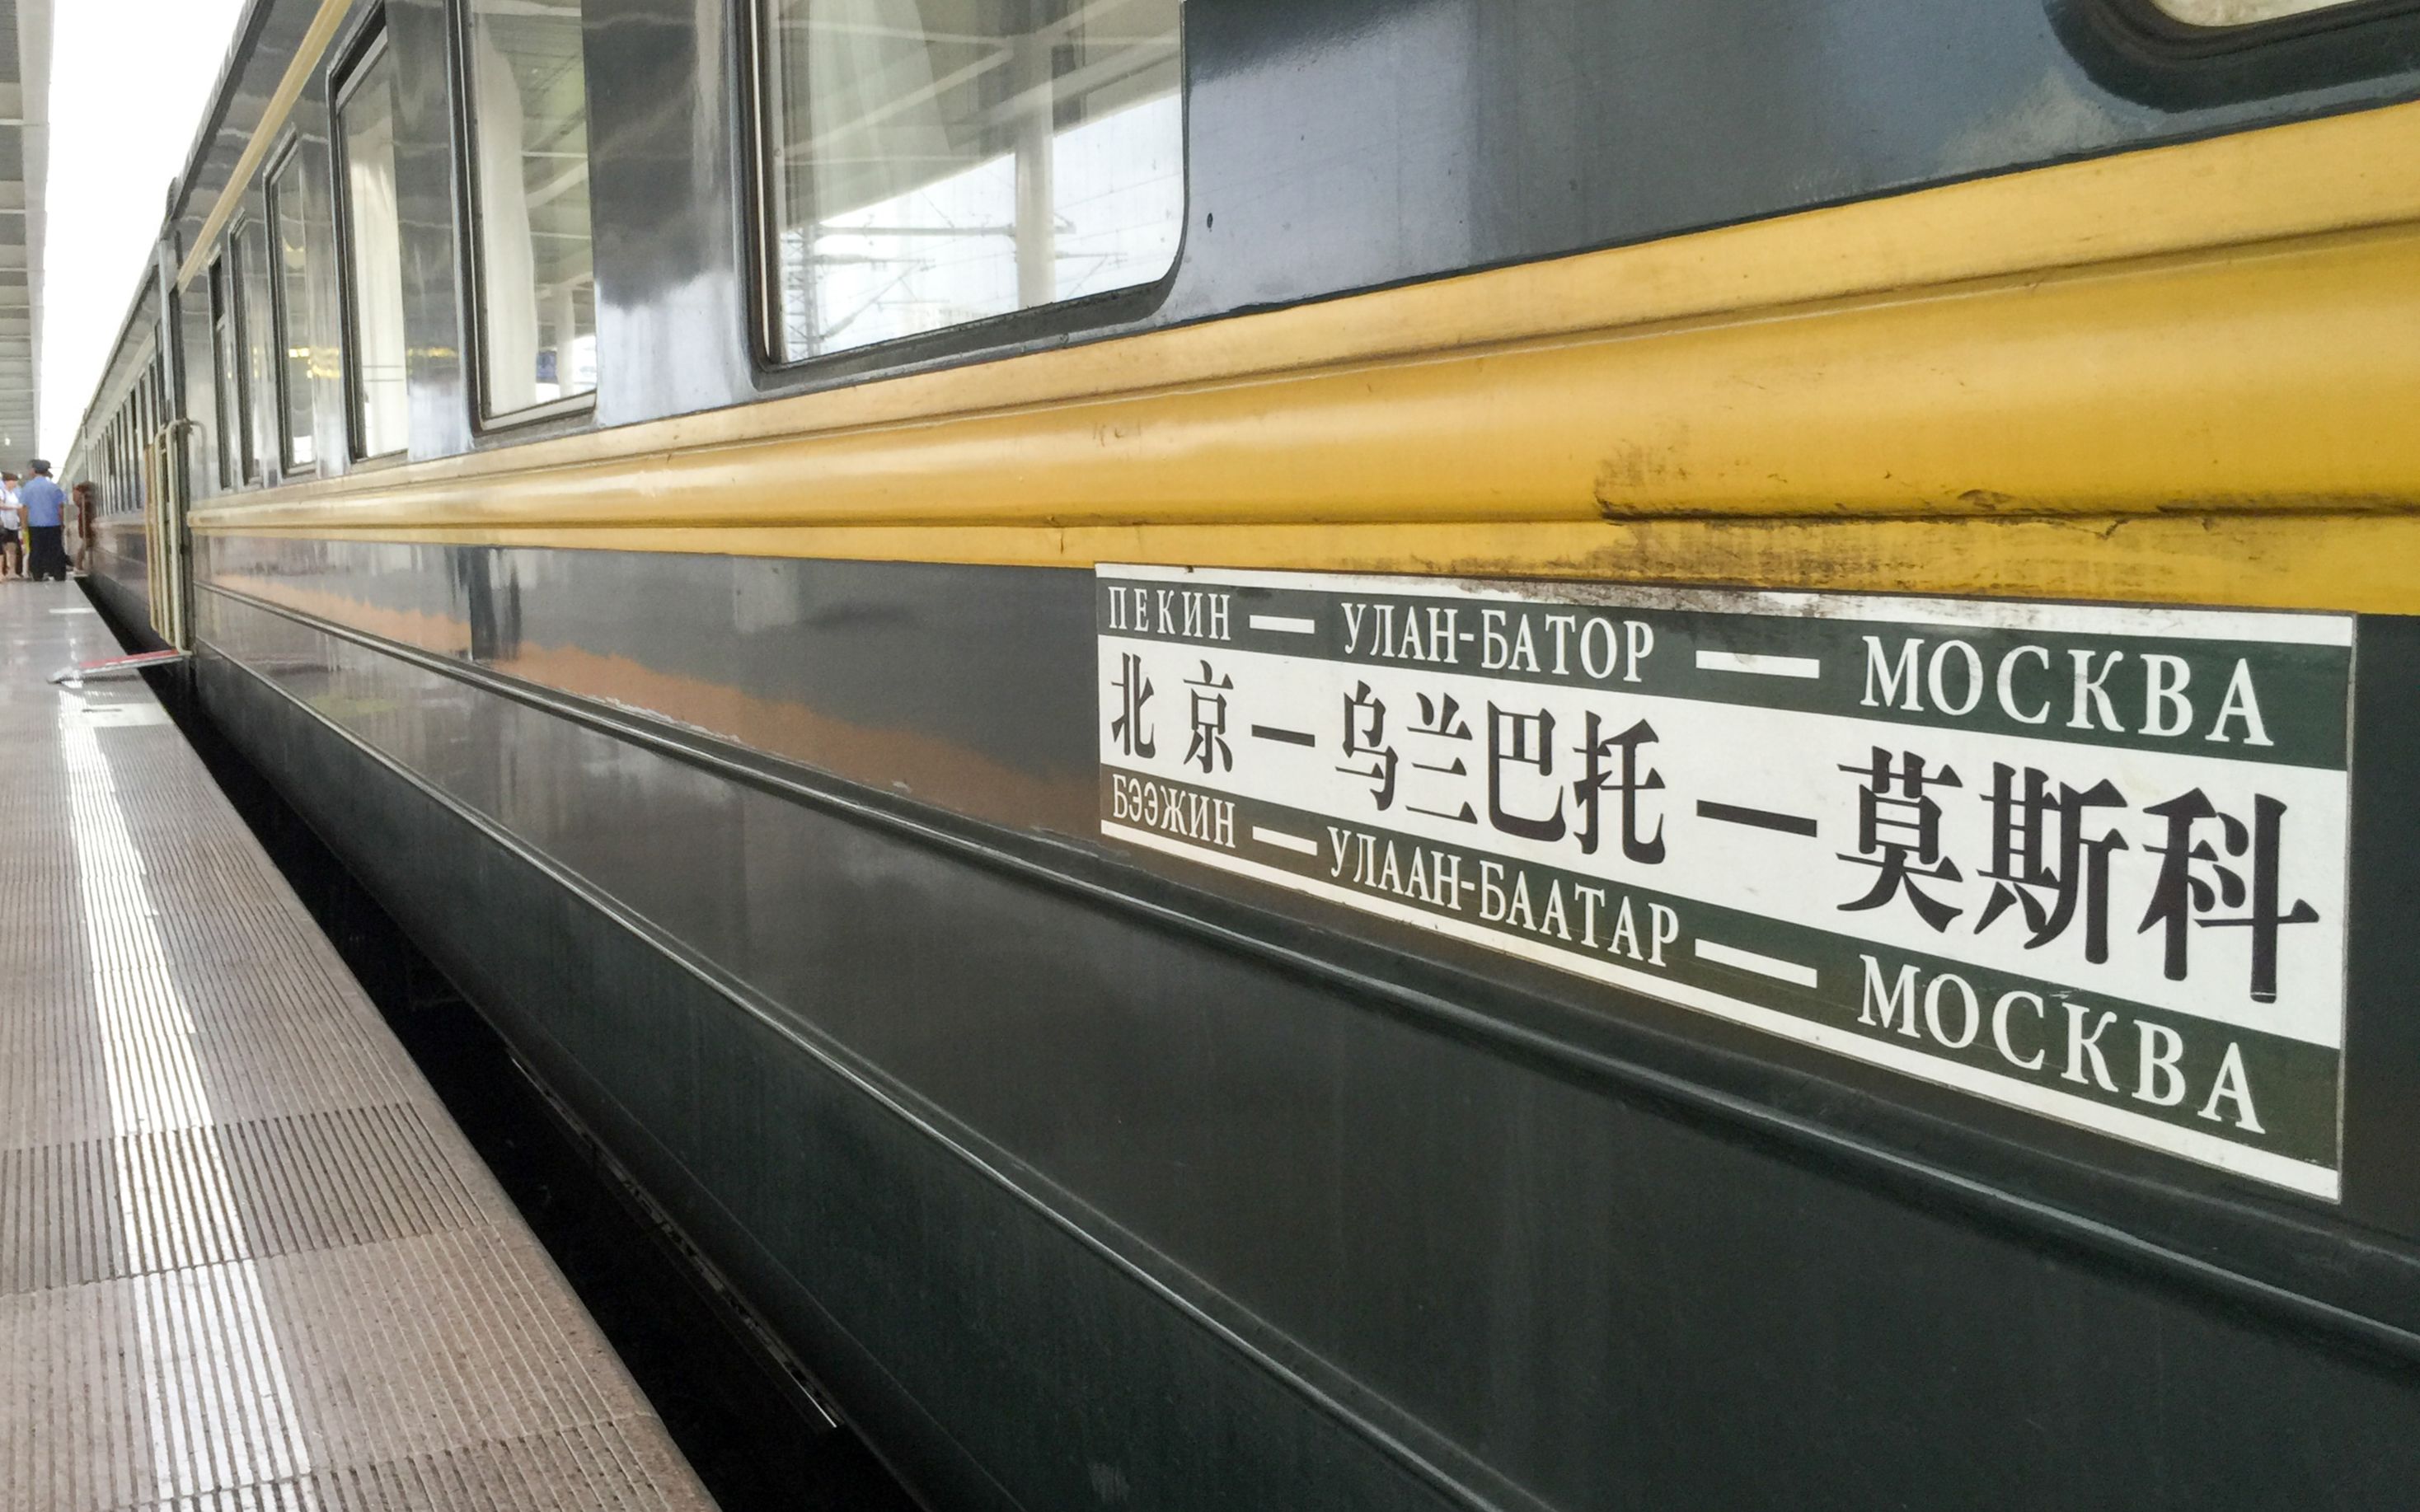 k3国际列车车头图片